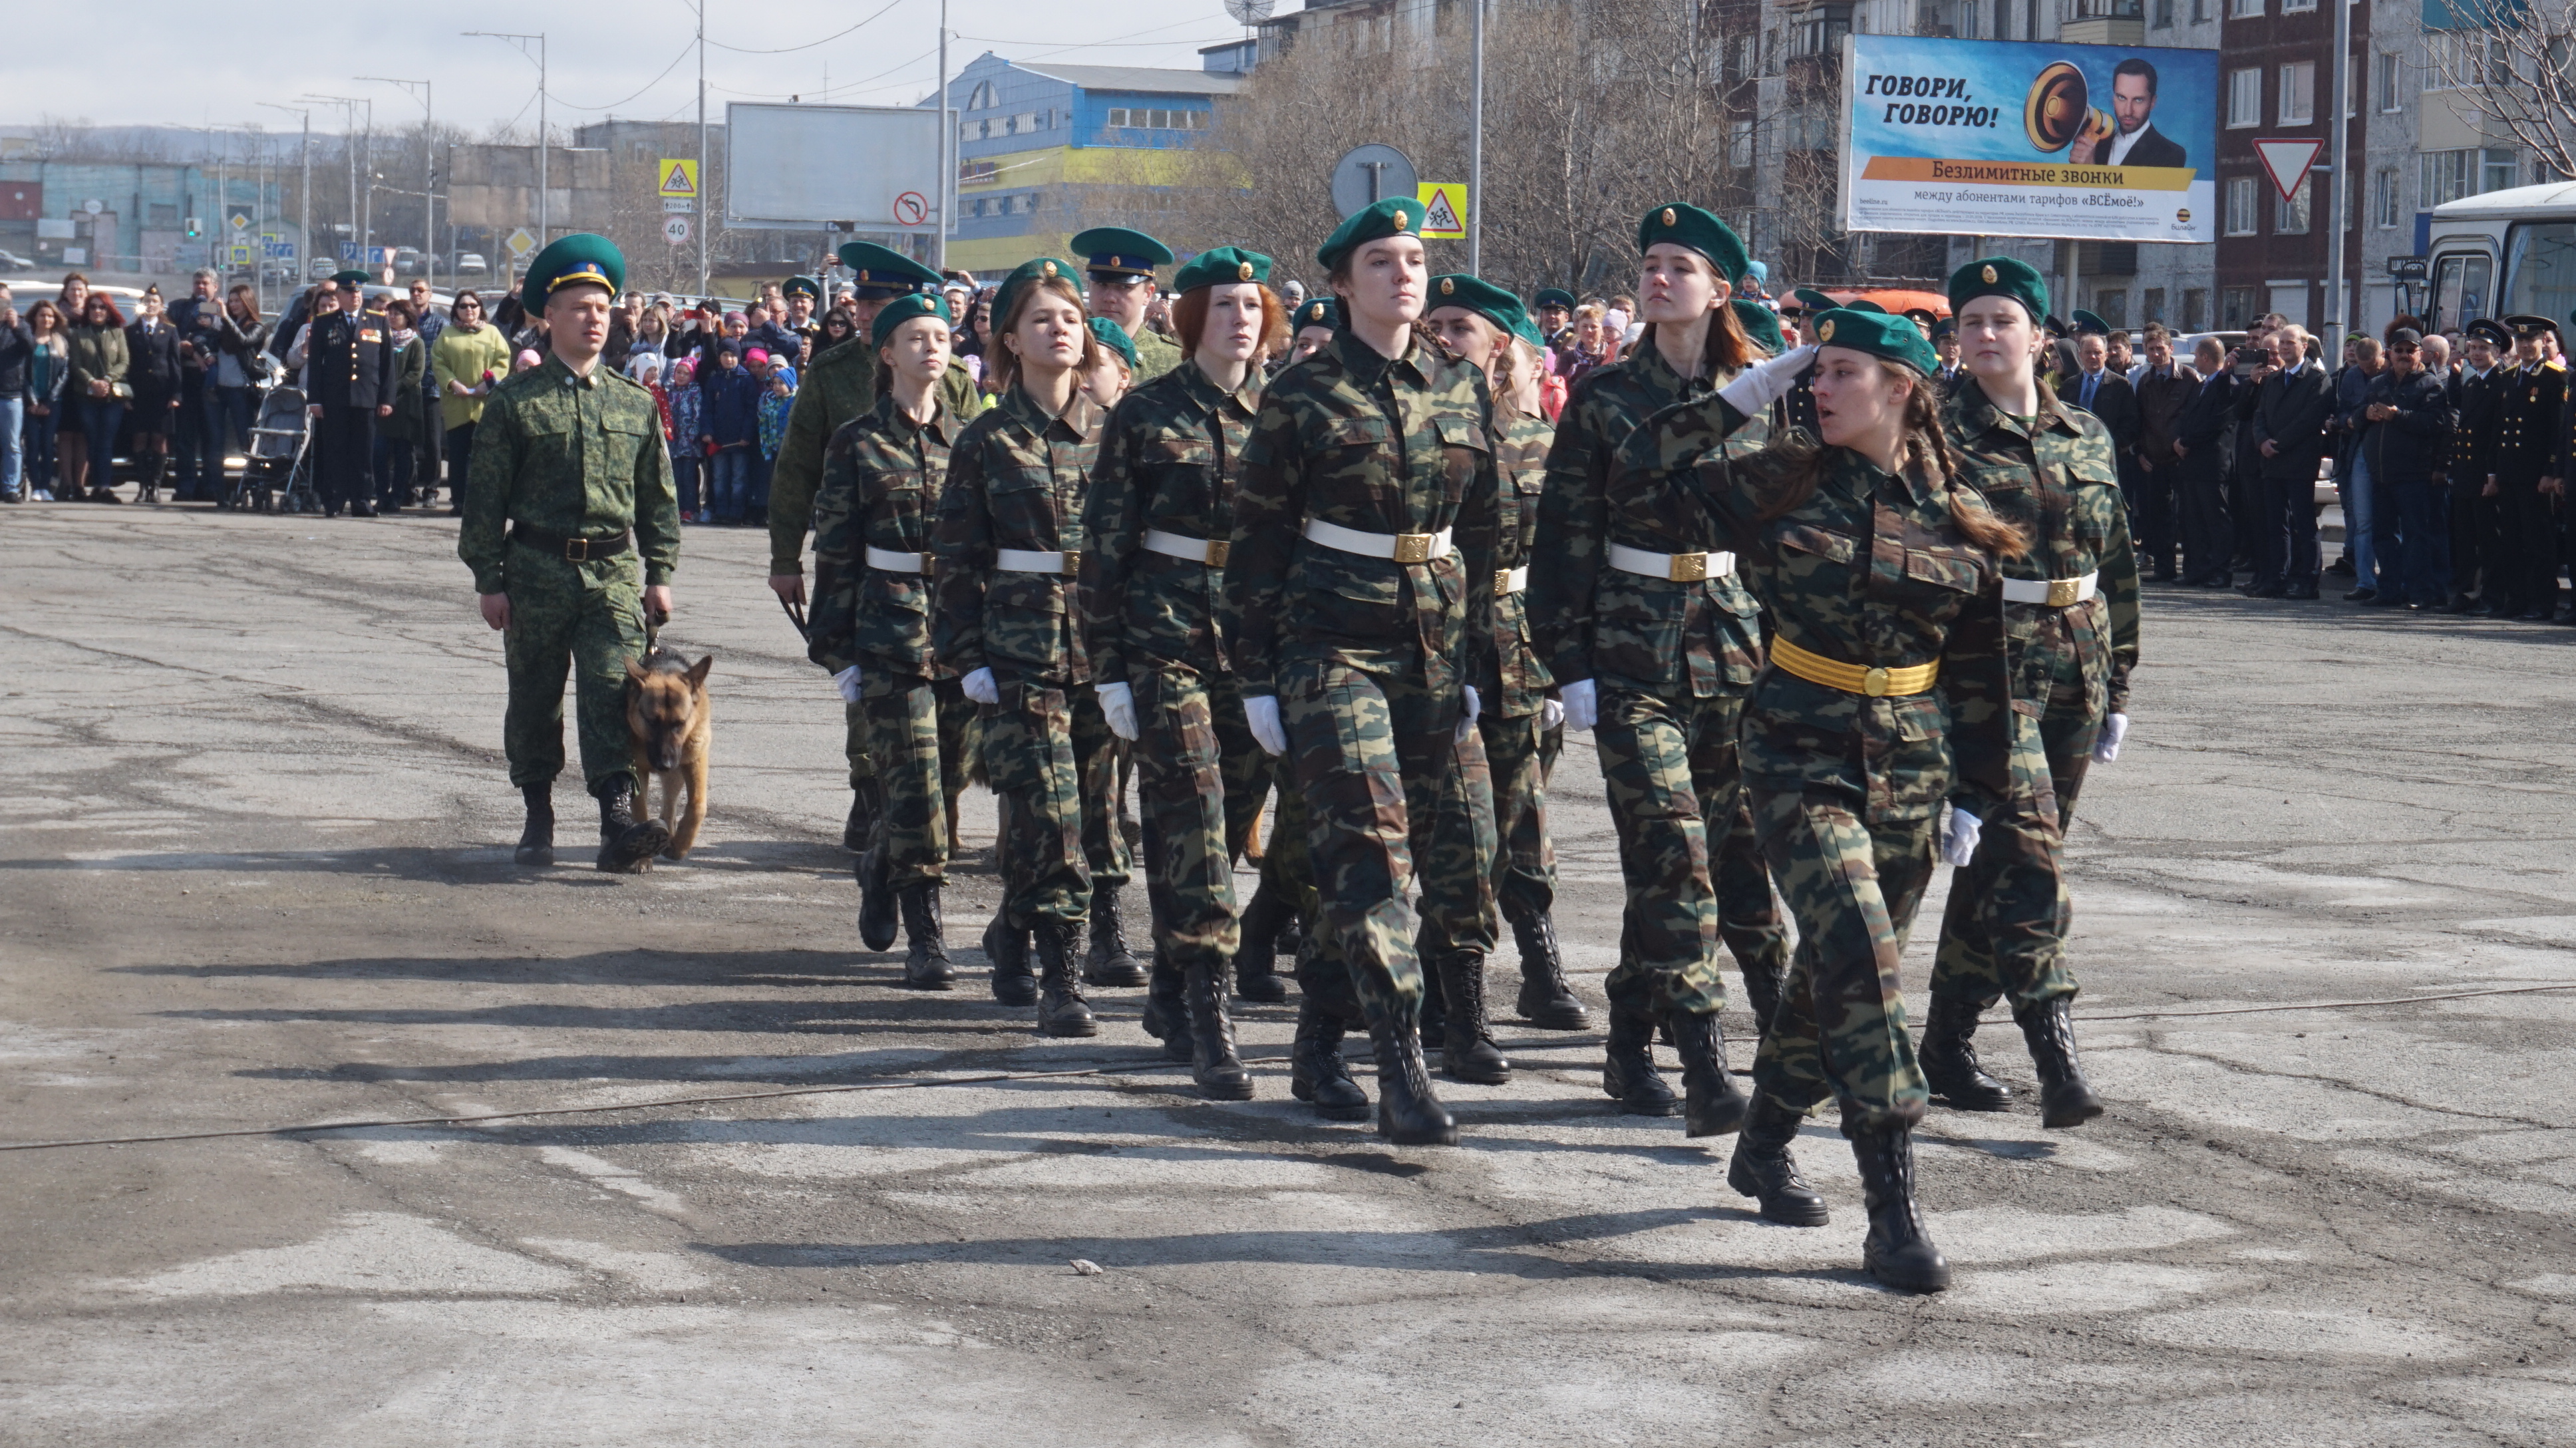 На площади Дзержинского прошёл торжественный митинг в честь празднования 100-летия погранвойск России